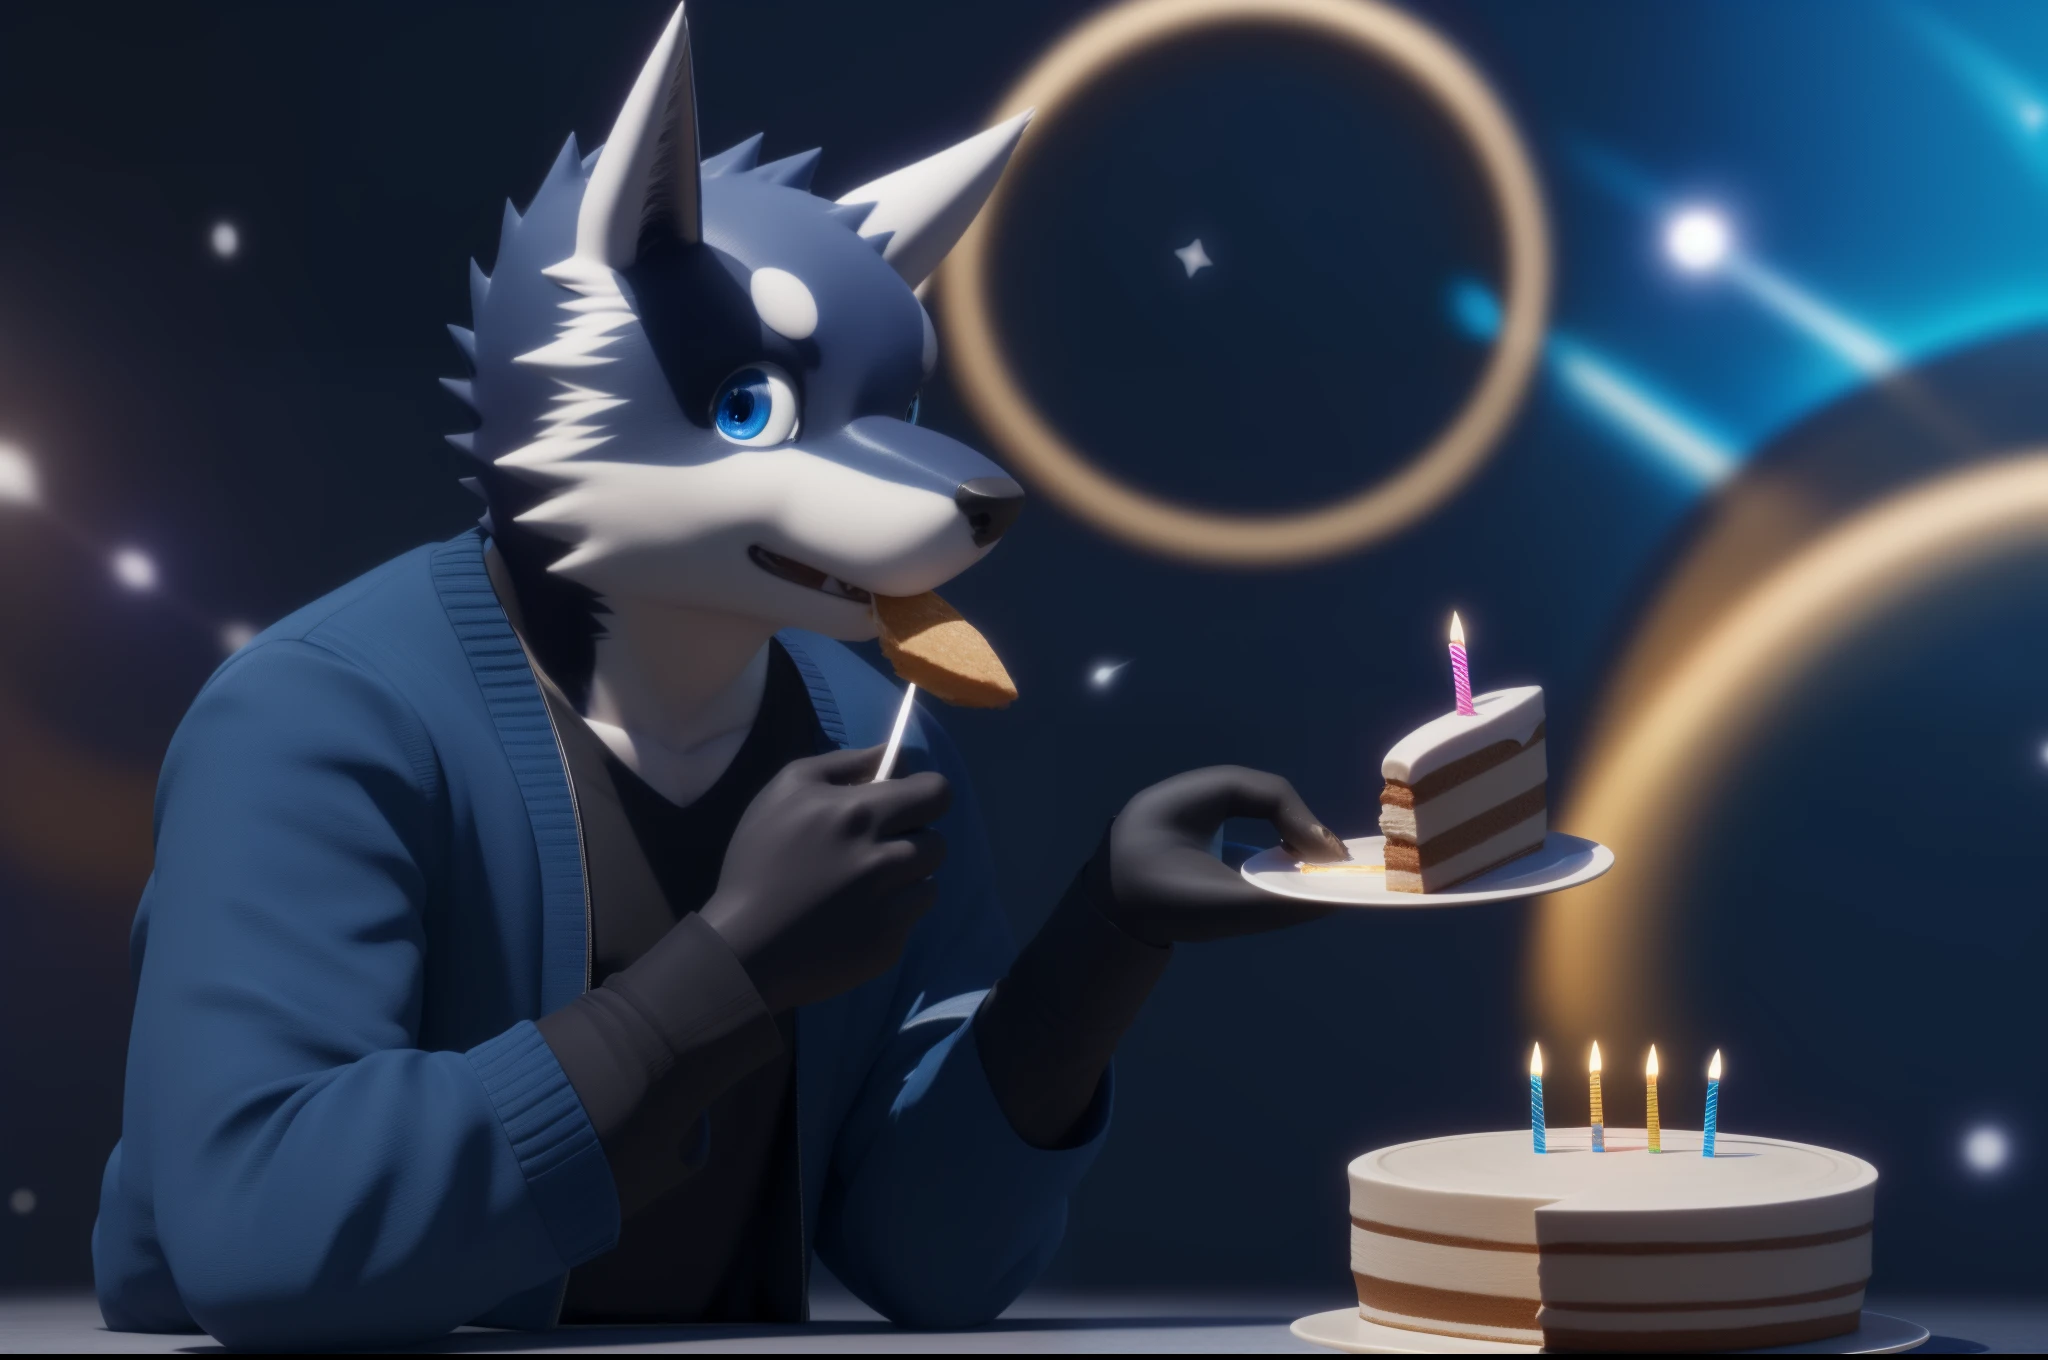 Kuugo schaut den Betrachter an, während er ein Stück Geburtstagstorte isst, trägt eine blaue Jacke und ein schwarzes Hemd, blaue Augen, ein sehr schöner realistischer Hintergrund mit Sternschnuppen, ultrarealistische digitale Kunst in 3D, Full HD, superhohe Auflösung